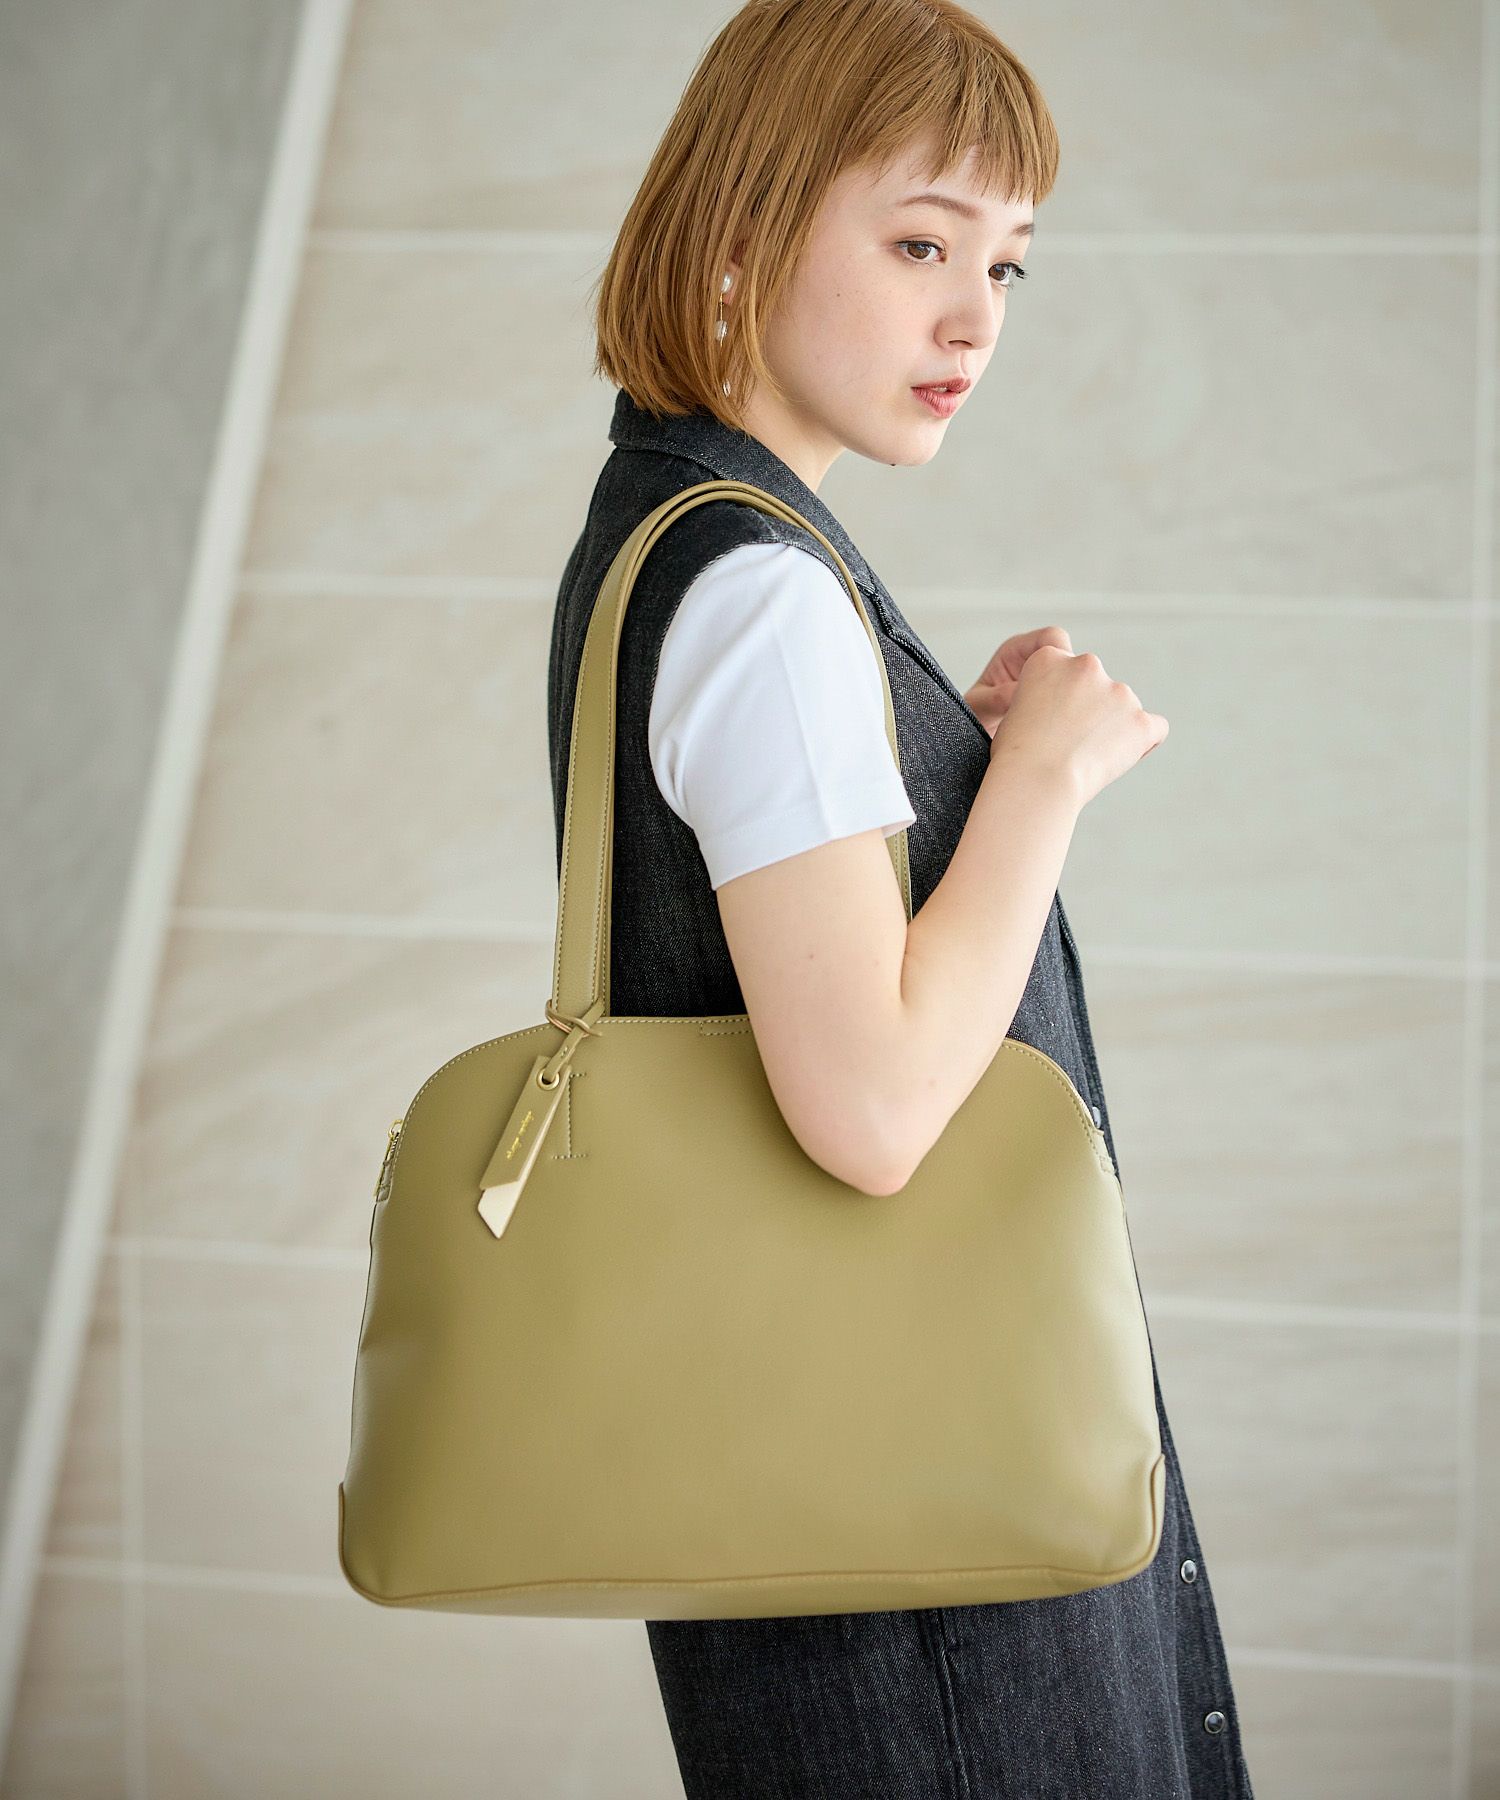 40代女性におすすめな人気の通勤バッグは、かるいかばんのA4トートバッグ